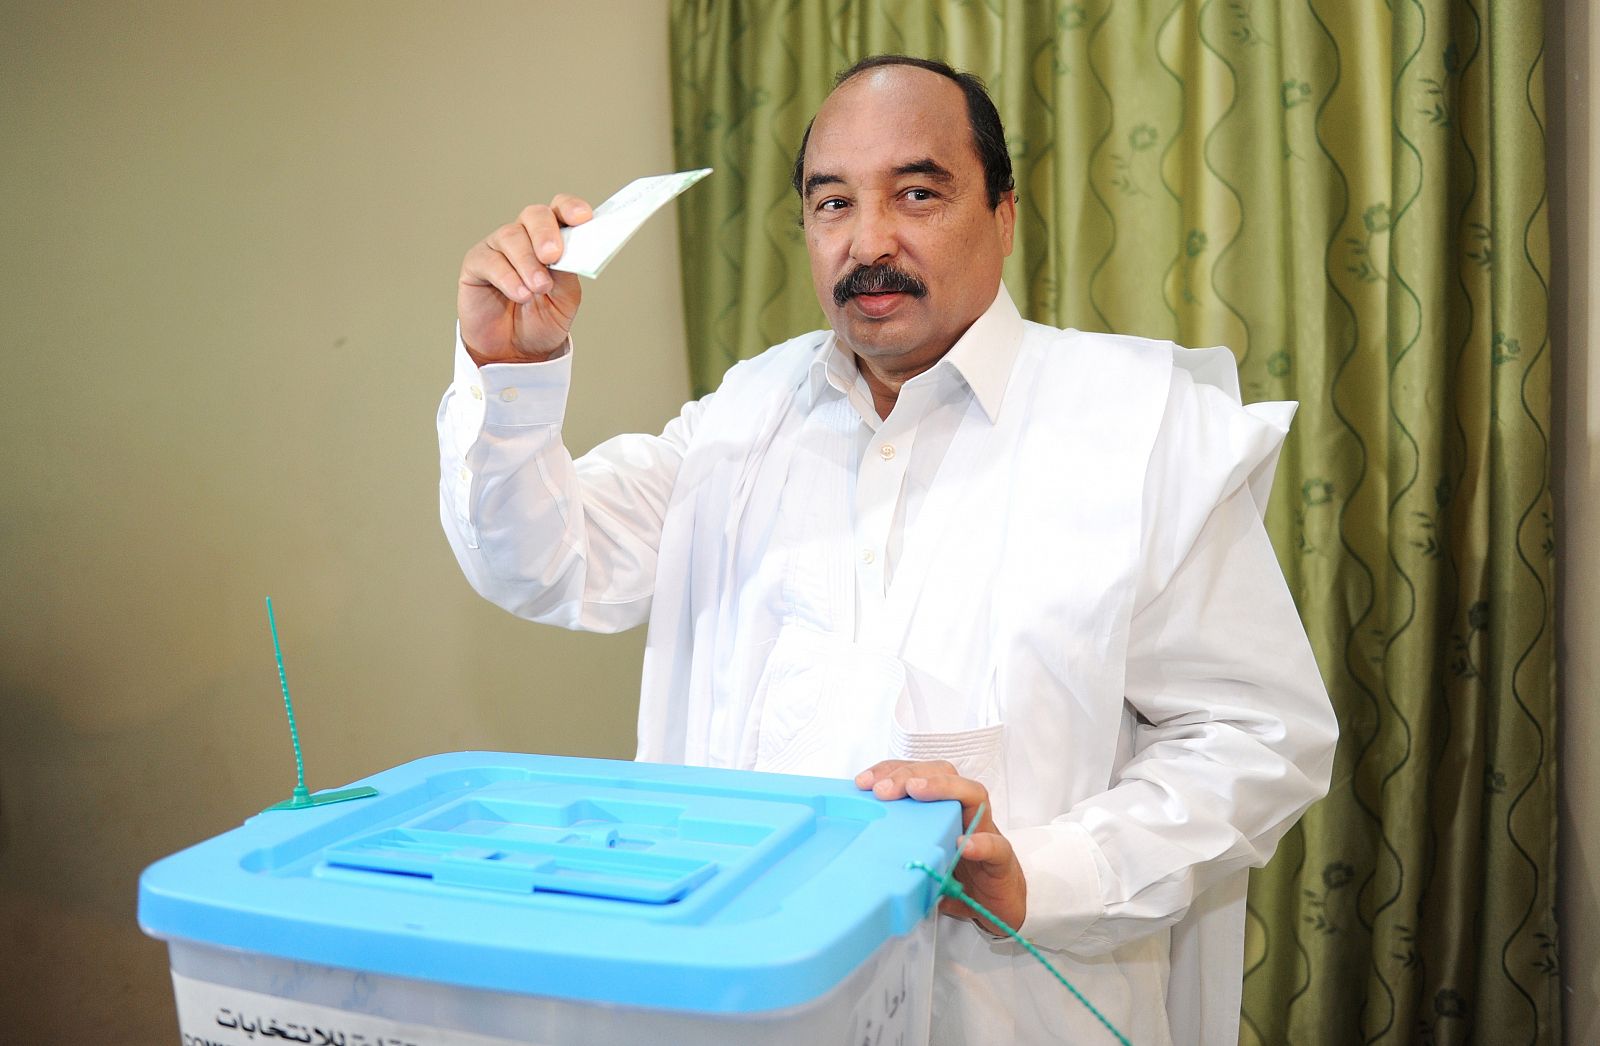 El presidente de Mauritania, Mohamed Ould Abdelaziz, depositando su voto durante la jornada electoral de estre domingo.